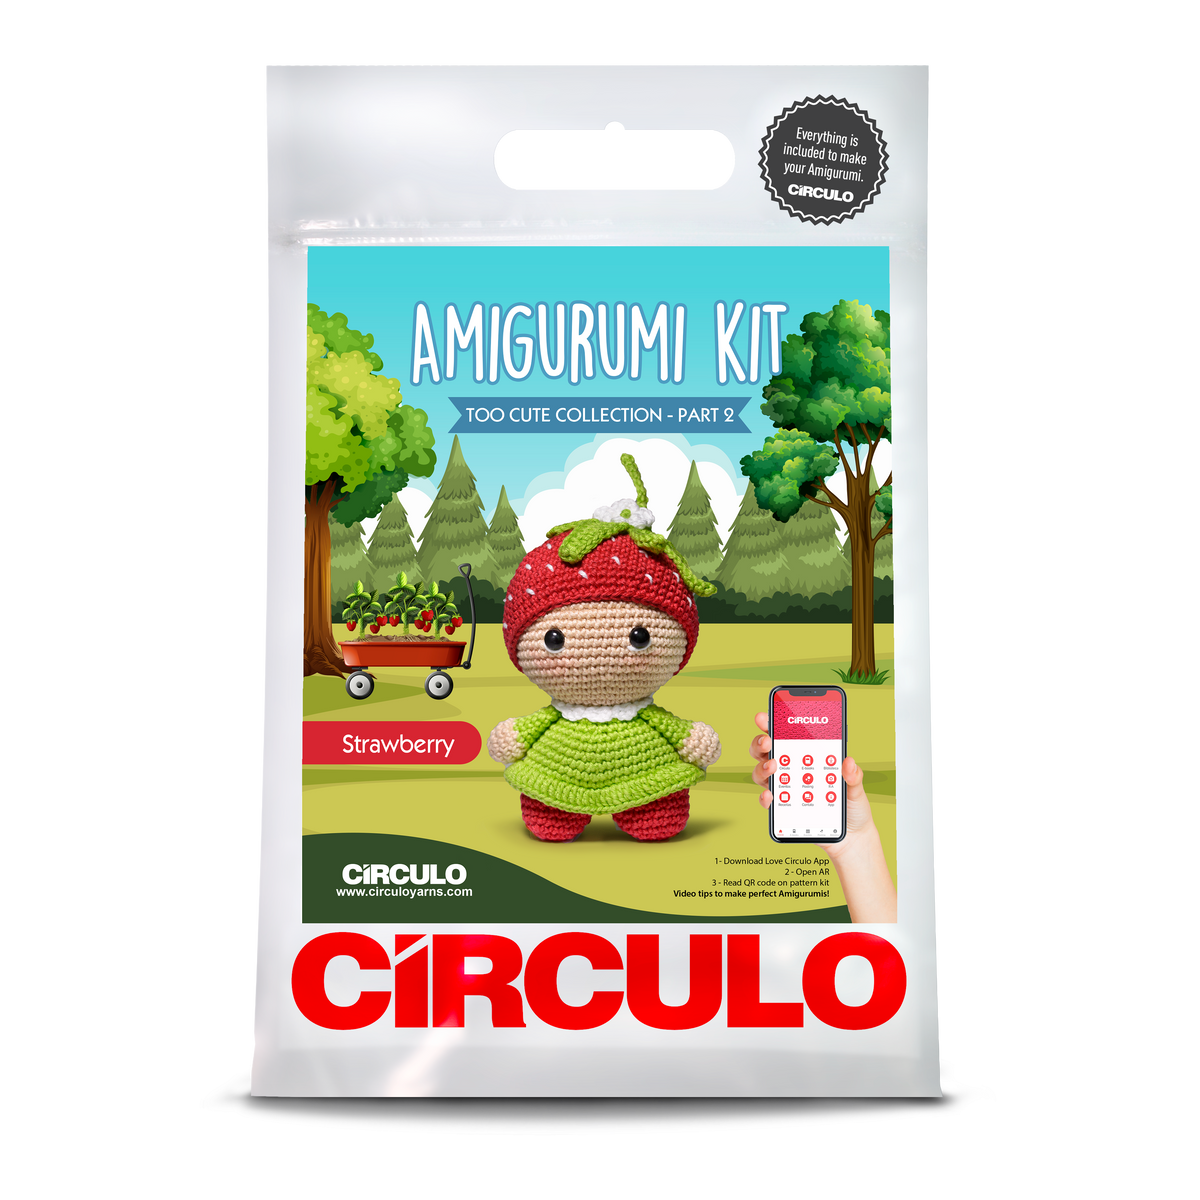 Circulo Amigurumi Too Cute 2 Kits